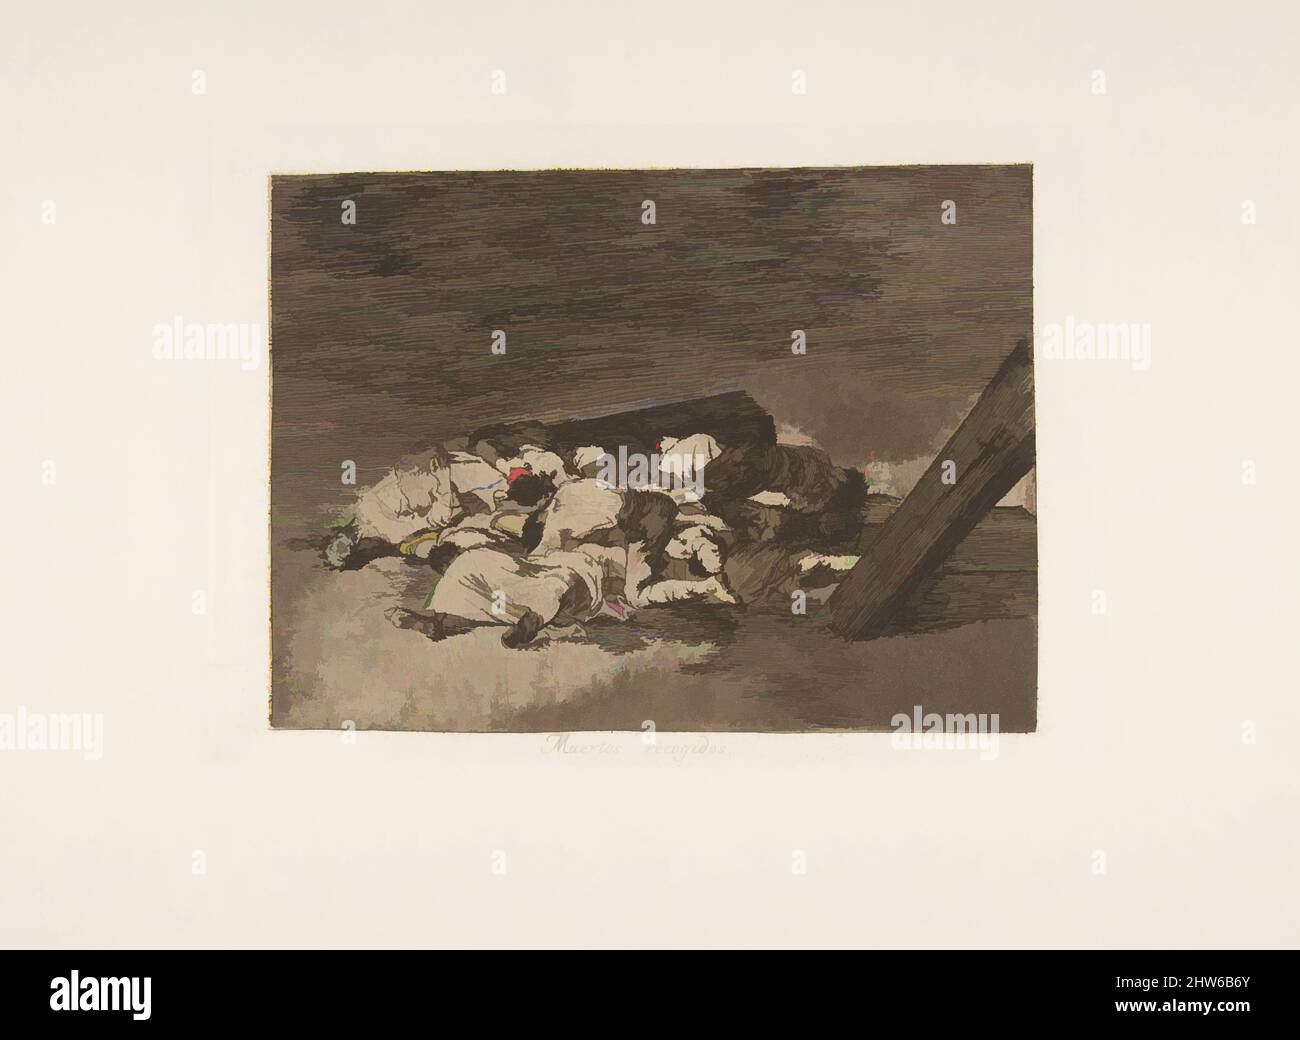 Arte ispirata dal piatto 63 da 'i disastri della guerra' (Los Desastres de la Guerra): 'Raccolto dei morti' (Muertos recogidos.), 1811–12 (pubblicato nel 1863), acquaforte e bruno acquatint, piatto: 5 7/8 x 8 1/16 in. (15 x 20,5 cm), Prints, Goya (Francisco de Goya y Lucientes) (spagnolo, opere classiche modernizzate da Artotop con un tuffo di modernità. Forme, colore e valore, impatto visivo accattivante sulle emozioni artistiche attraverso la libertà delle opere d'arte in modo contemporaneo. Un messaggio senza tempo che persegue una nuova direzione selvaggiamente creativa. Artisti che si rivolgono al supporto digitale e creano l'NFT Artotop Foto Stock